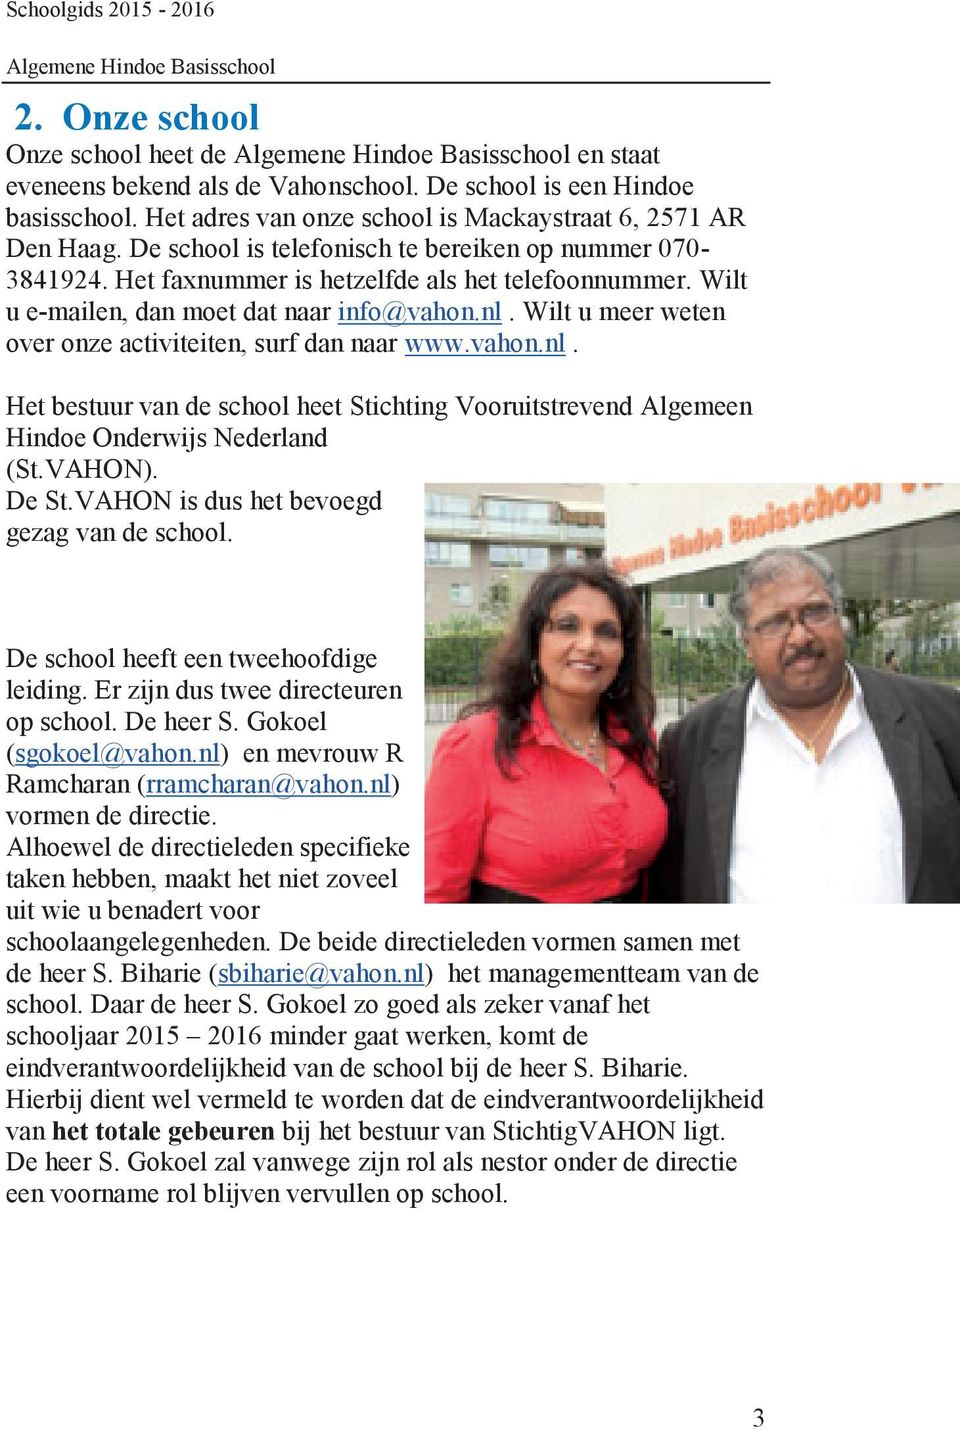 Wilt u meer weten over onze activiteiten, surf dan naar www.vahon.nl. Het bestuur van de school heet Stichting Vooruitstrevend Algemeen Hindoe Onderwijs Nederland (St.VAHON). De St.